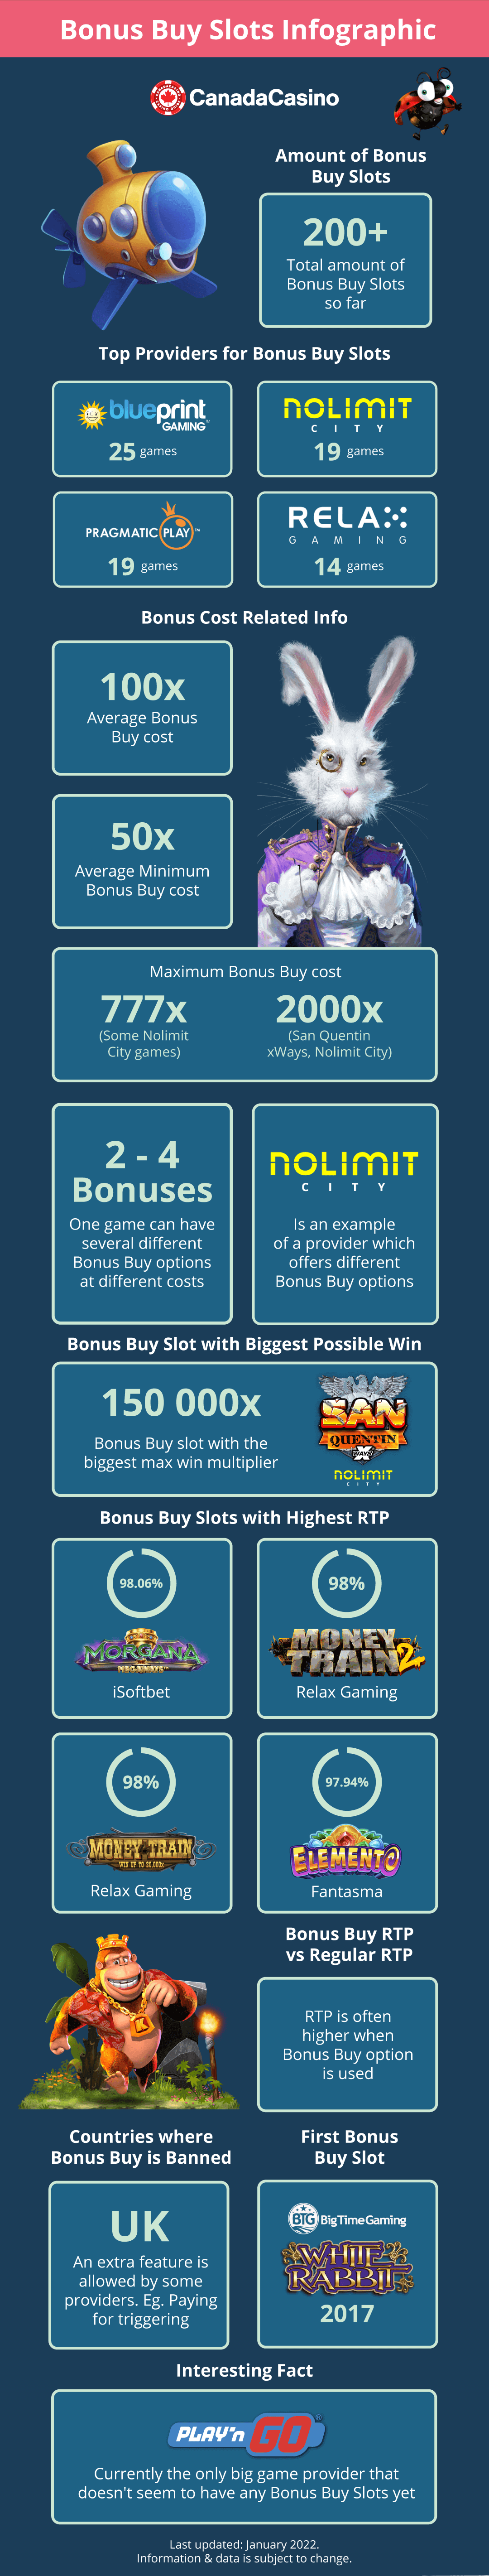 Bonus Buy Infographic 